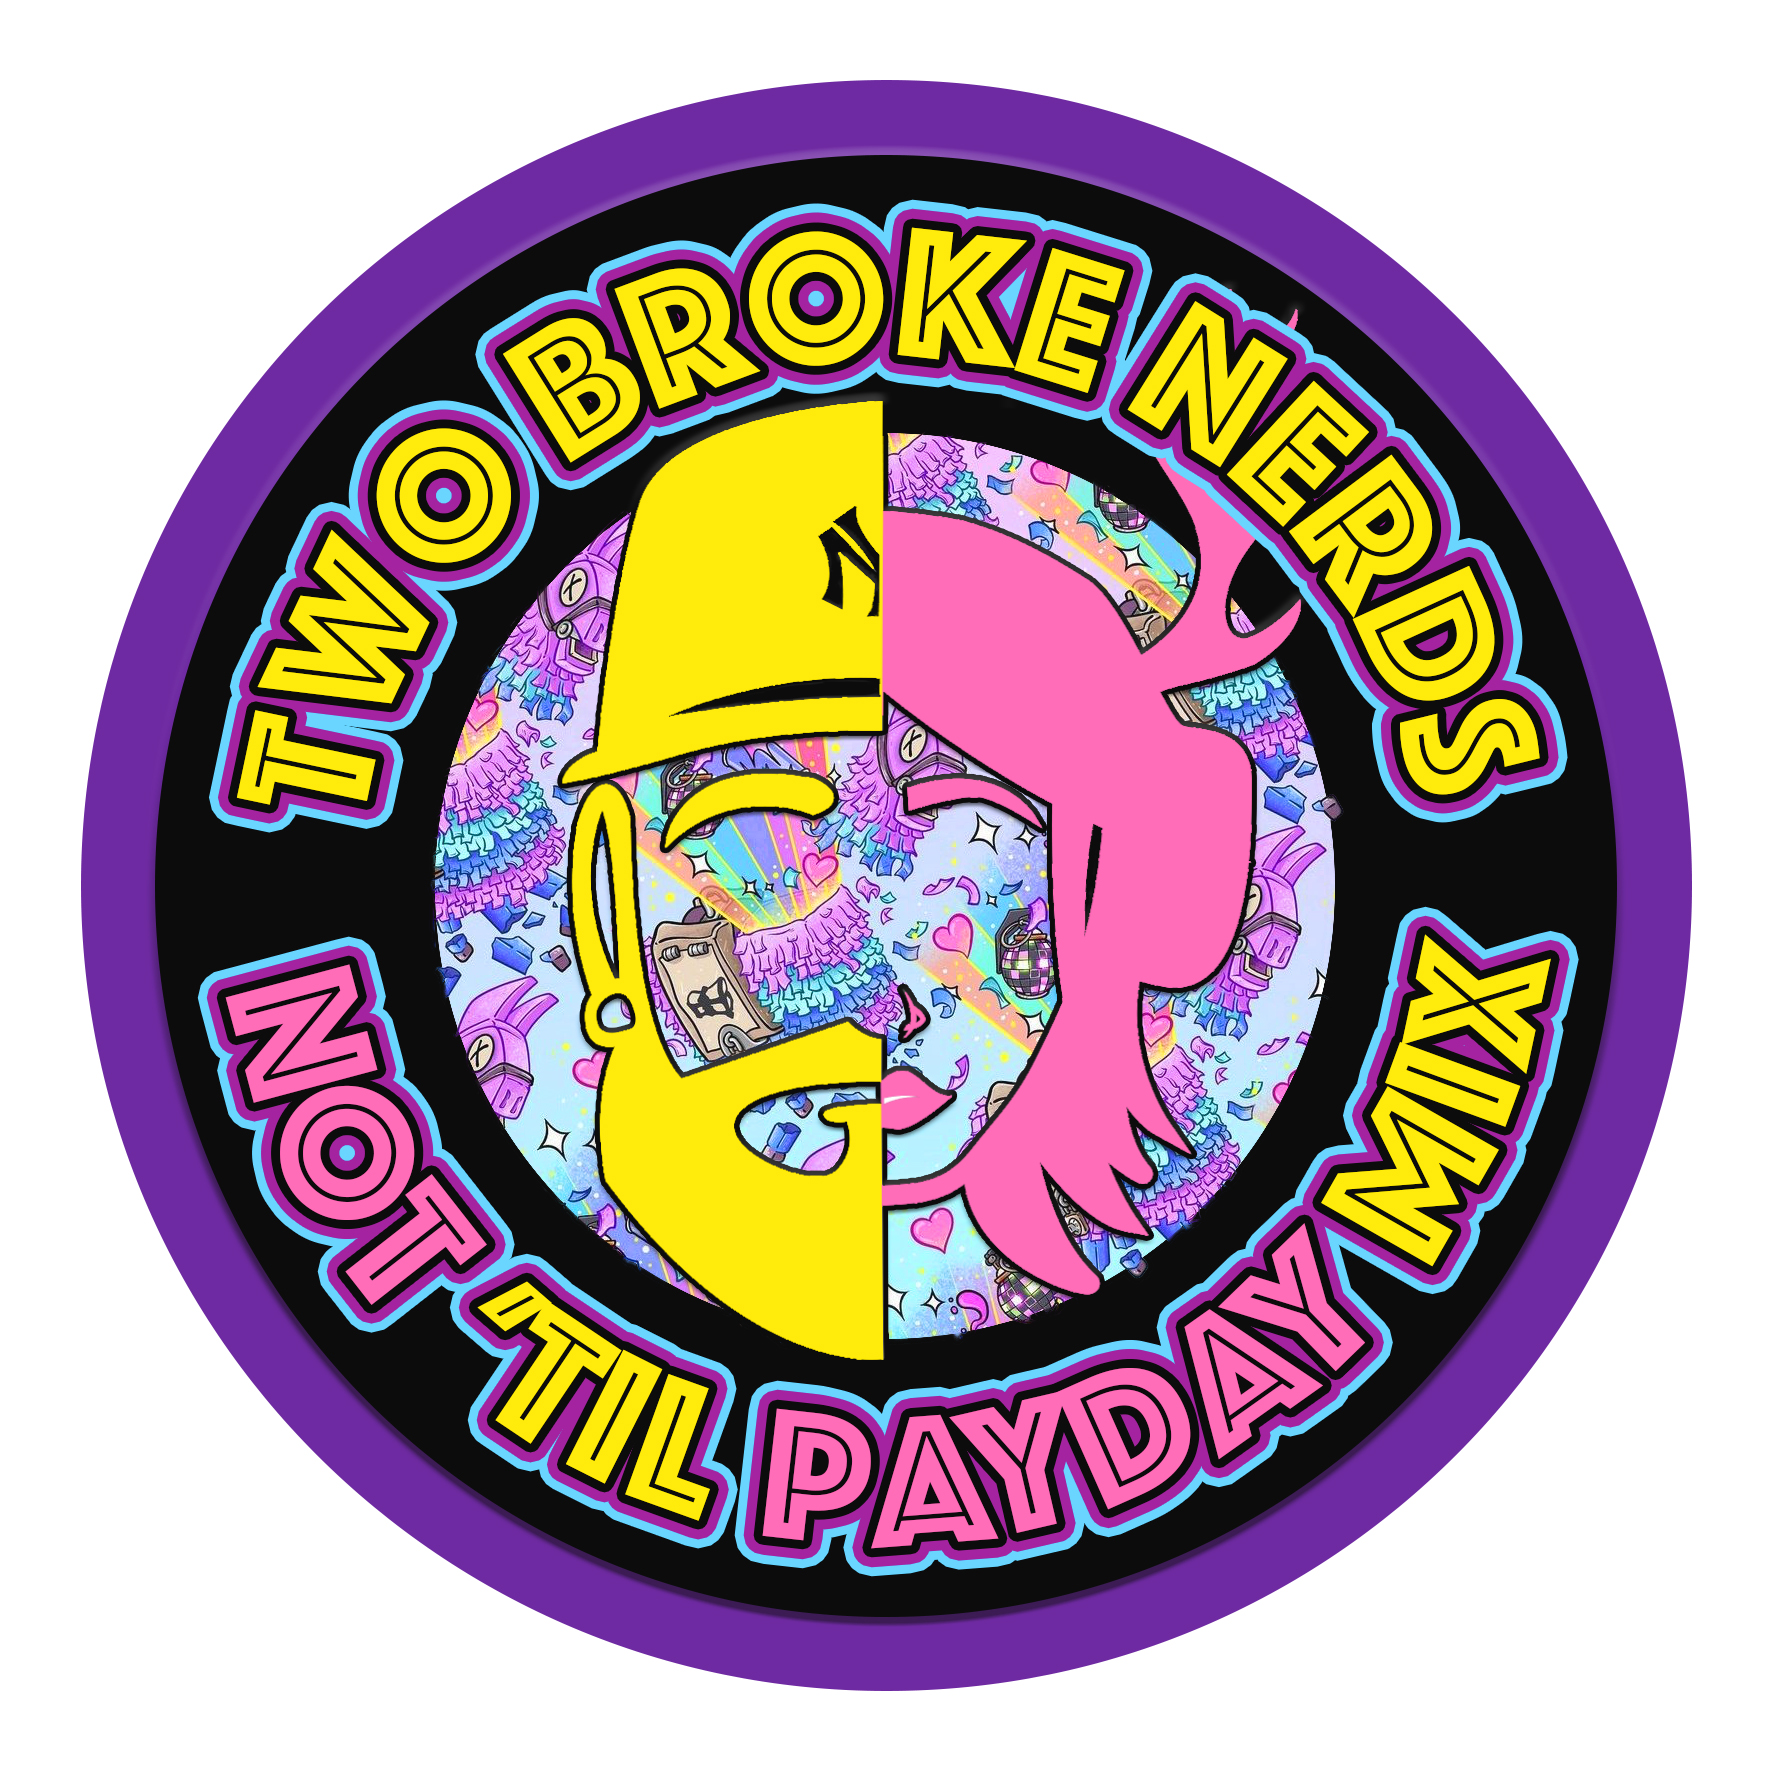 LTD ED. Two Broke Nerds ''Not TIL payday'' mix 1KG